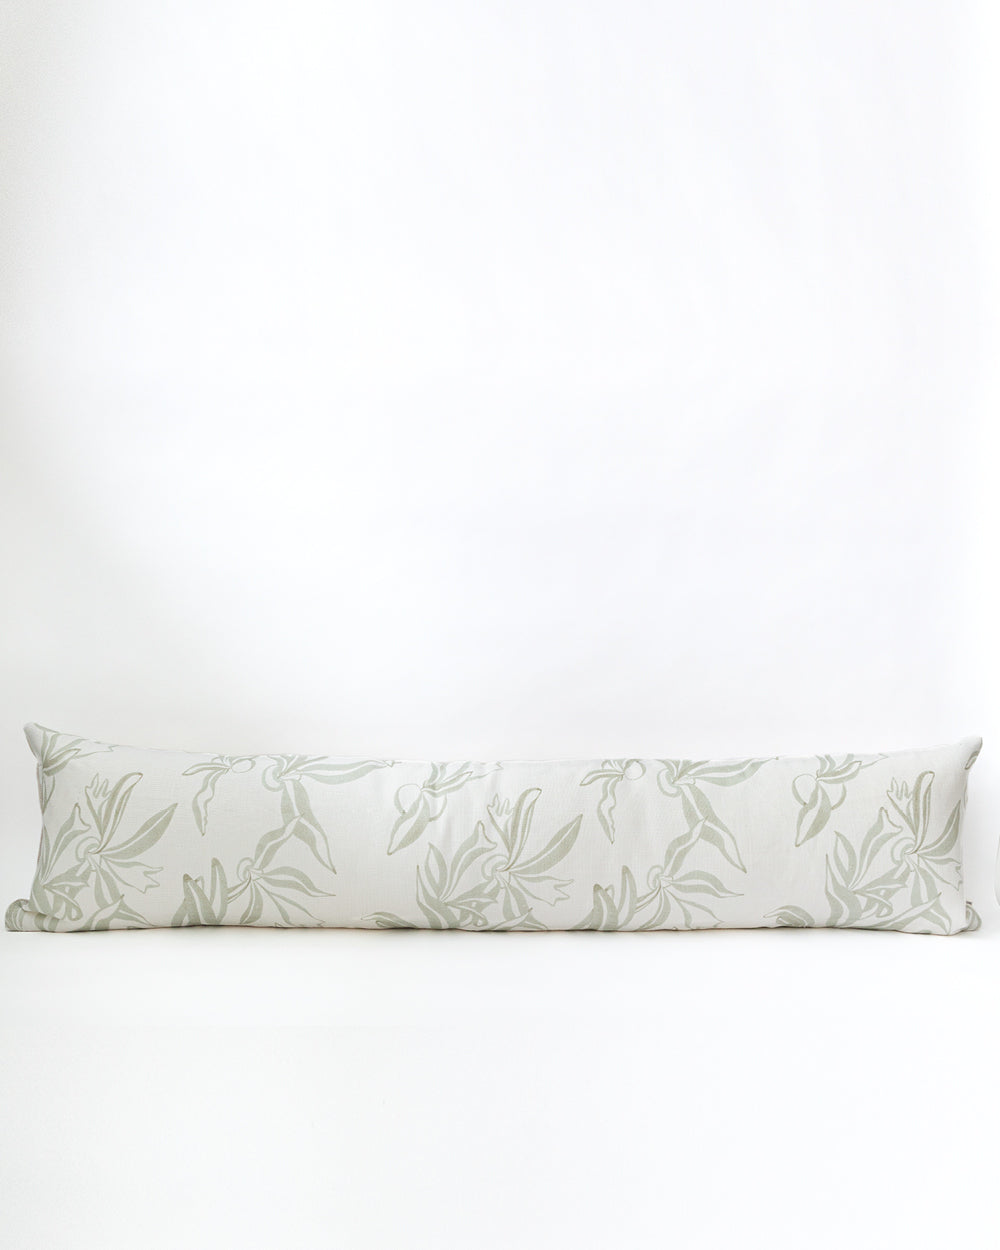 Elkhorn Pillow Cover, Moss